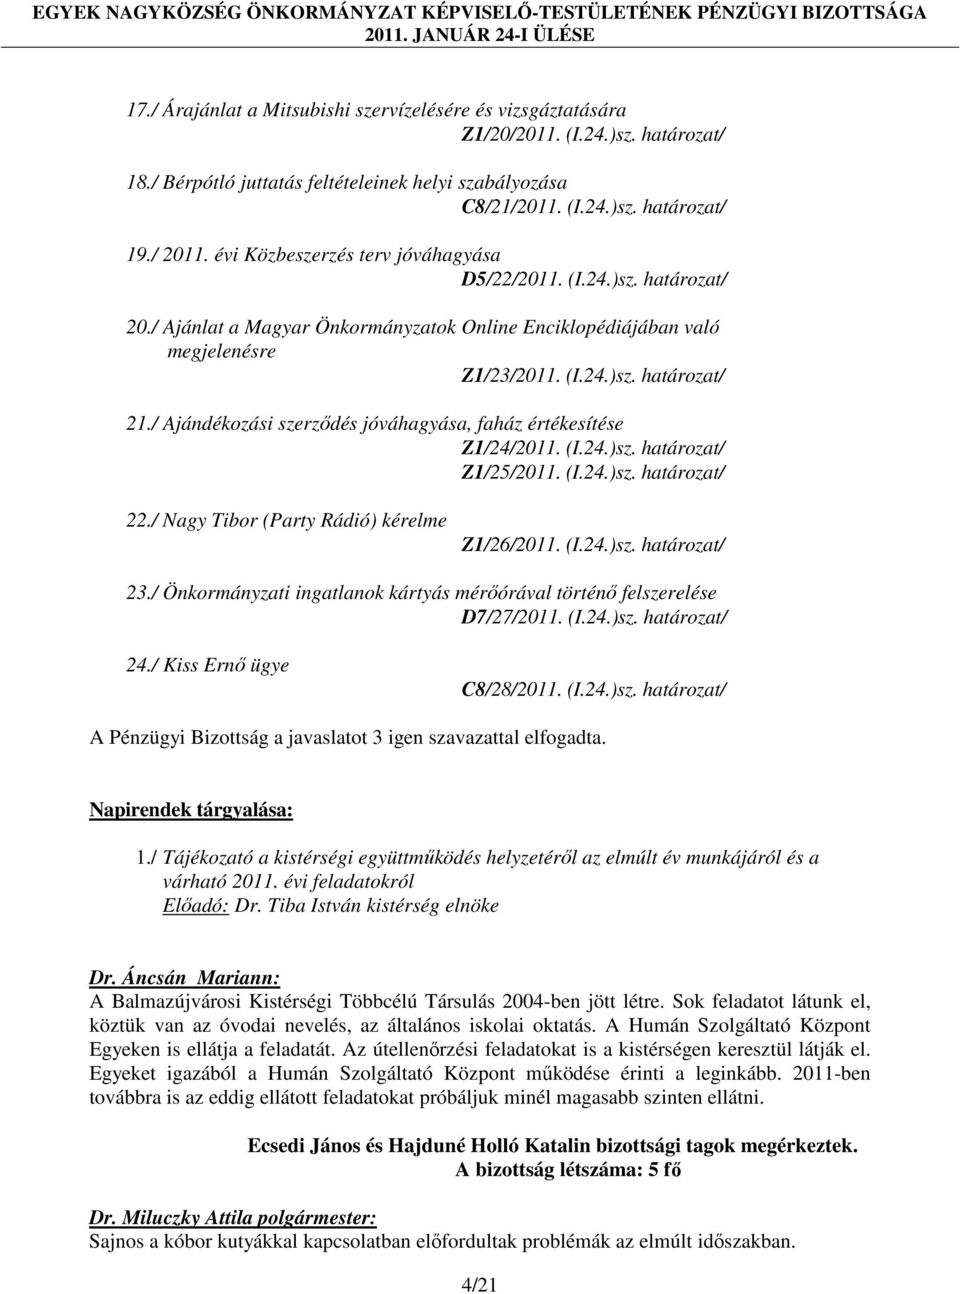 / Ajándékozási szerződés jóváhagyása, faház értékesítése Z1/24/2011. (I.24.)sz. határozat/ Z1/25/2011. (I.24.)sz. határozat/ 22./ Nagy Tibor (Party Rádió) kérelme Z1/26/2011. (I.24.)sz. határozat/ 23.